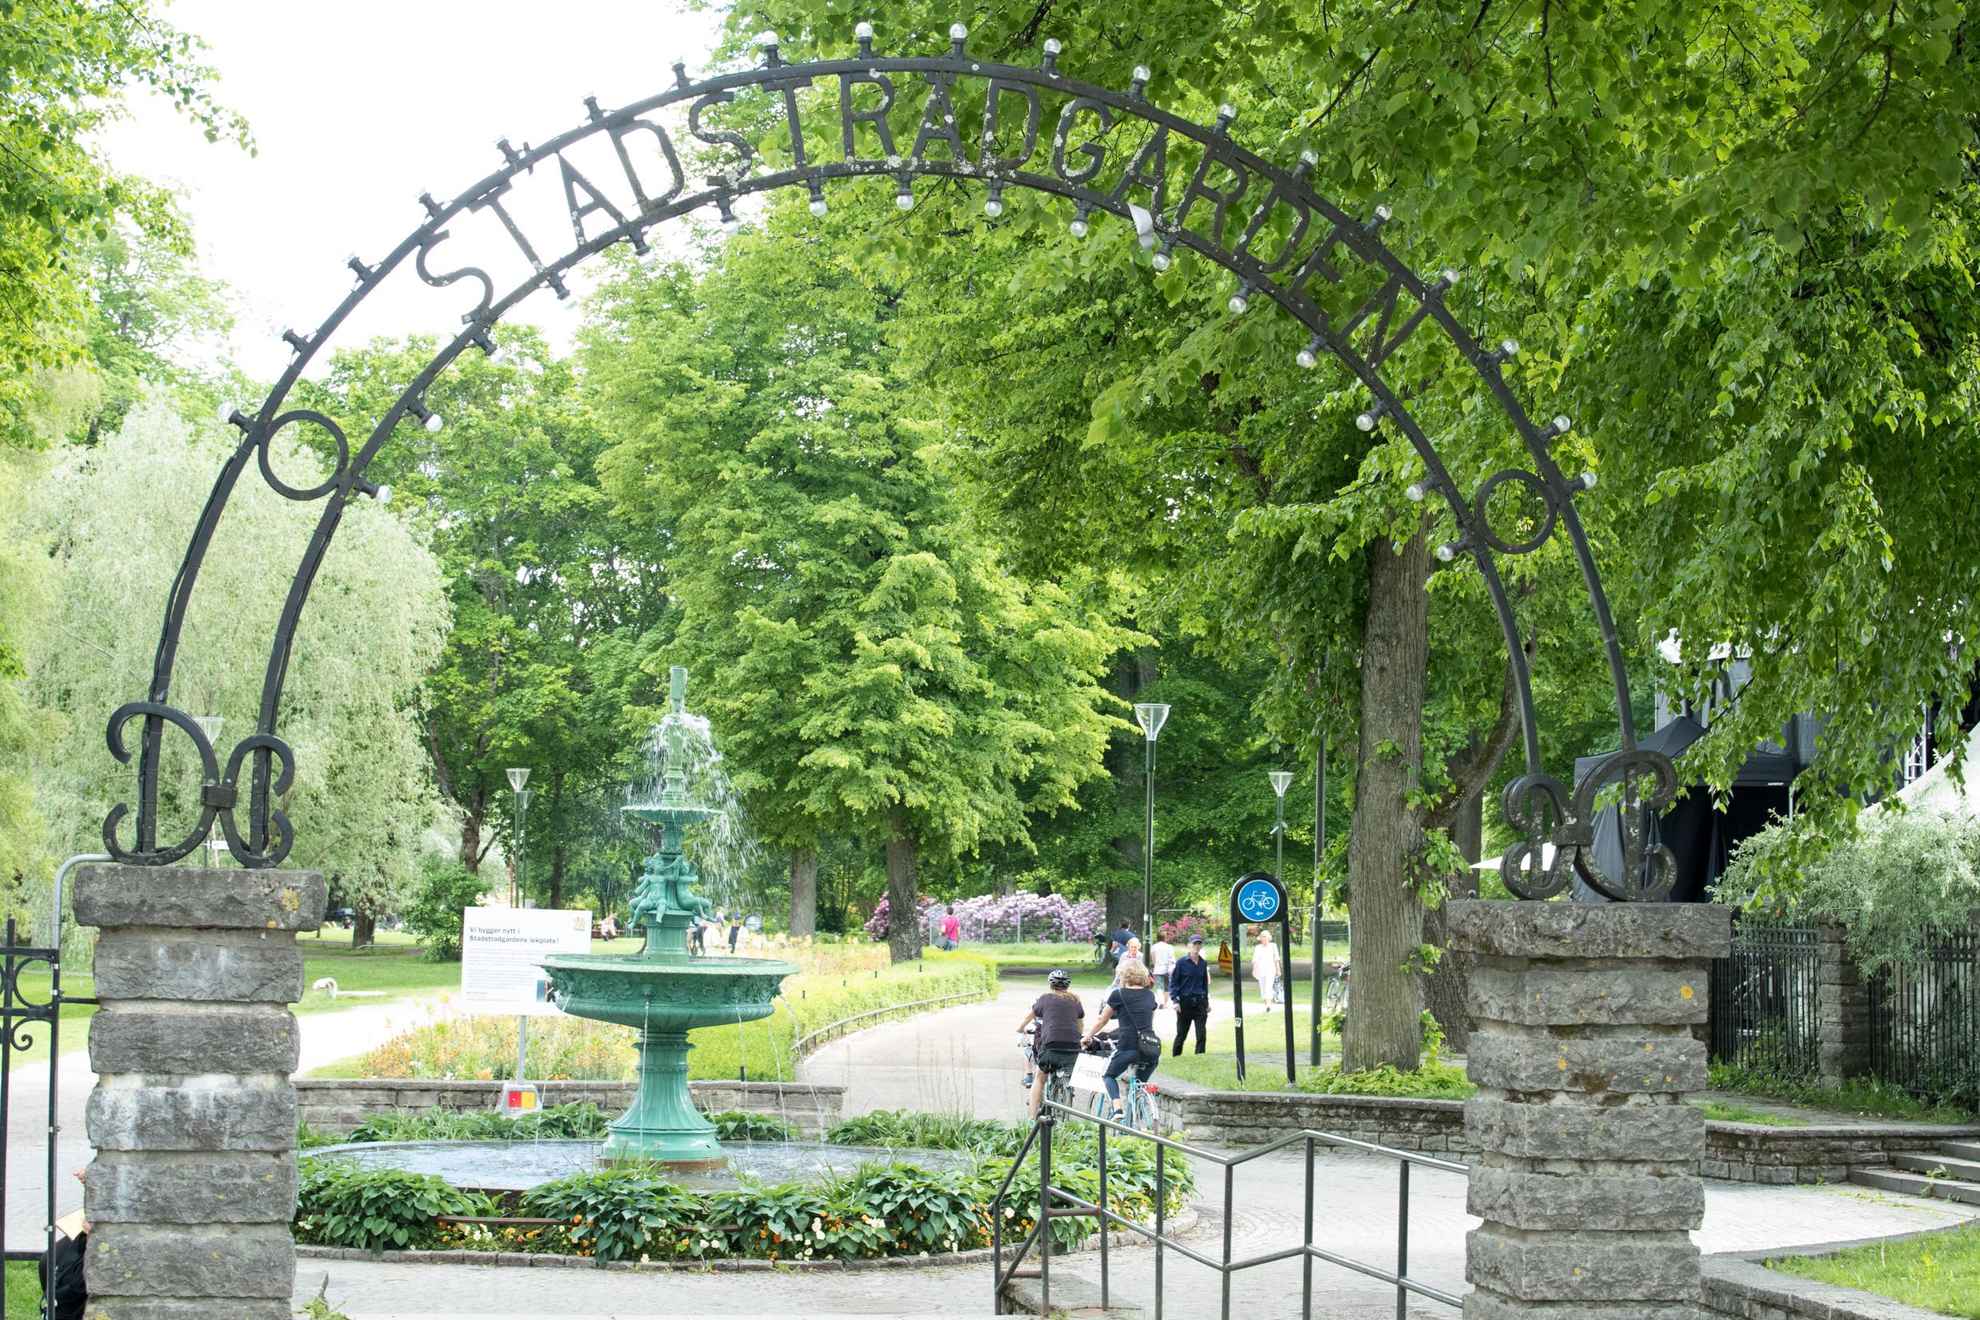 Uppsala City Garden